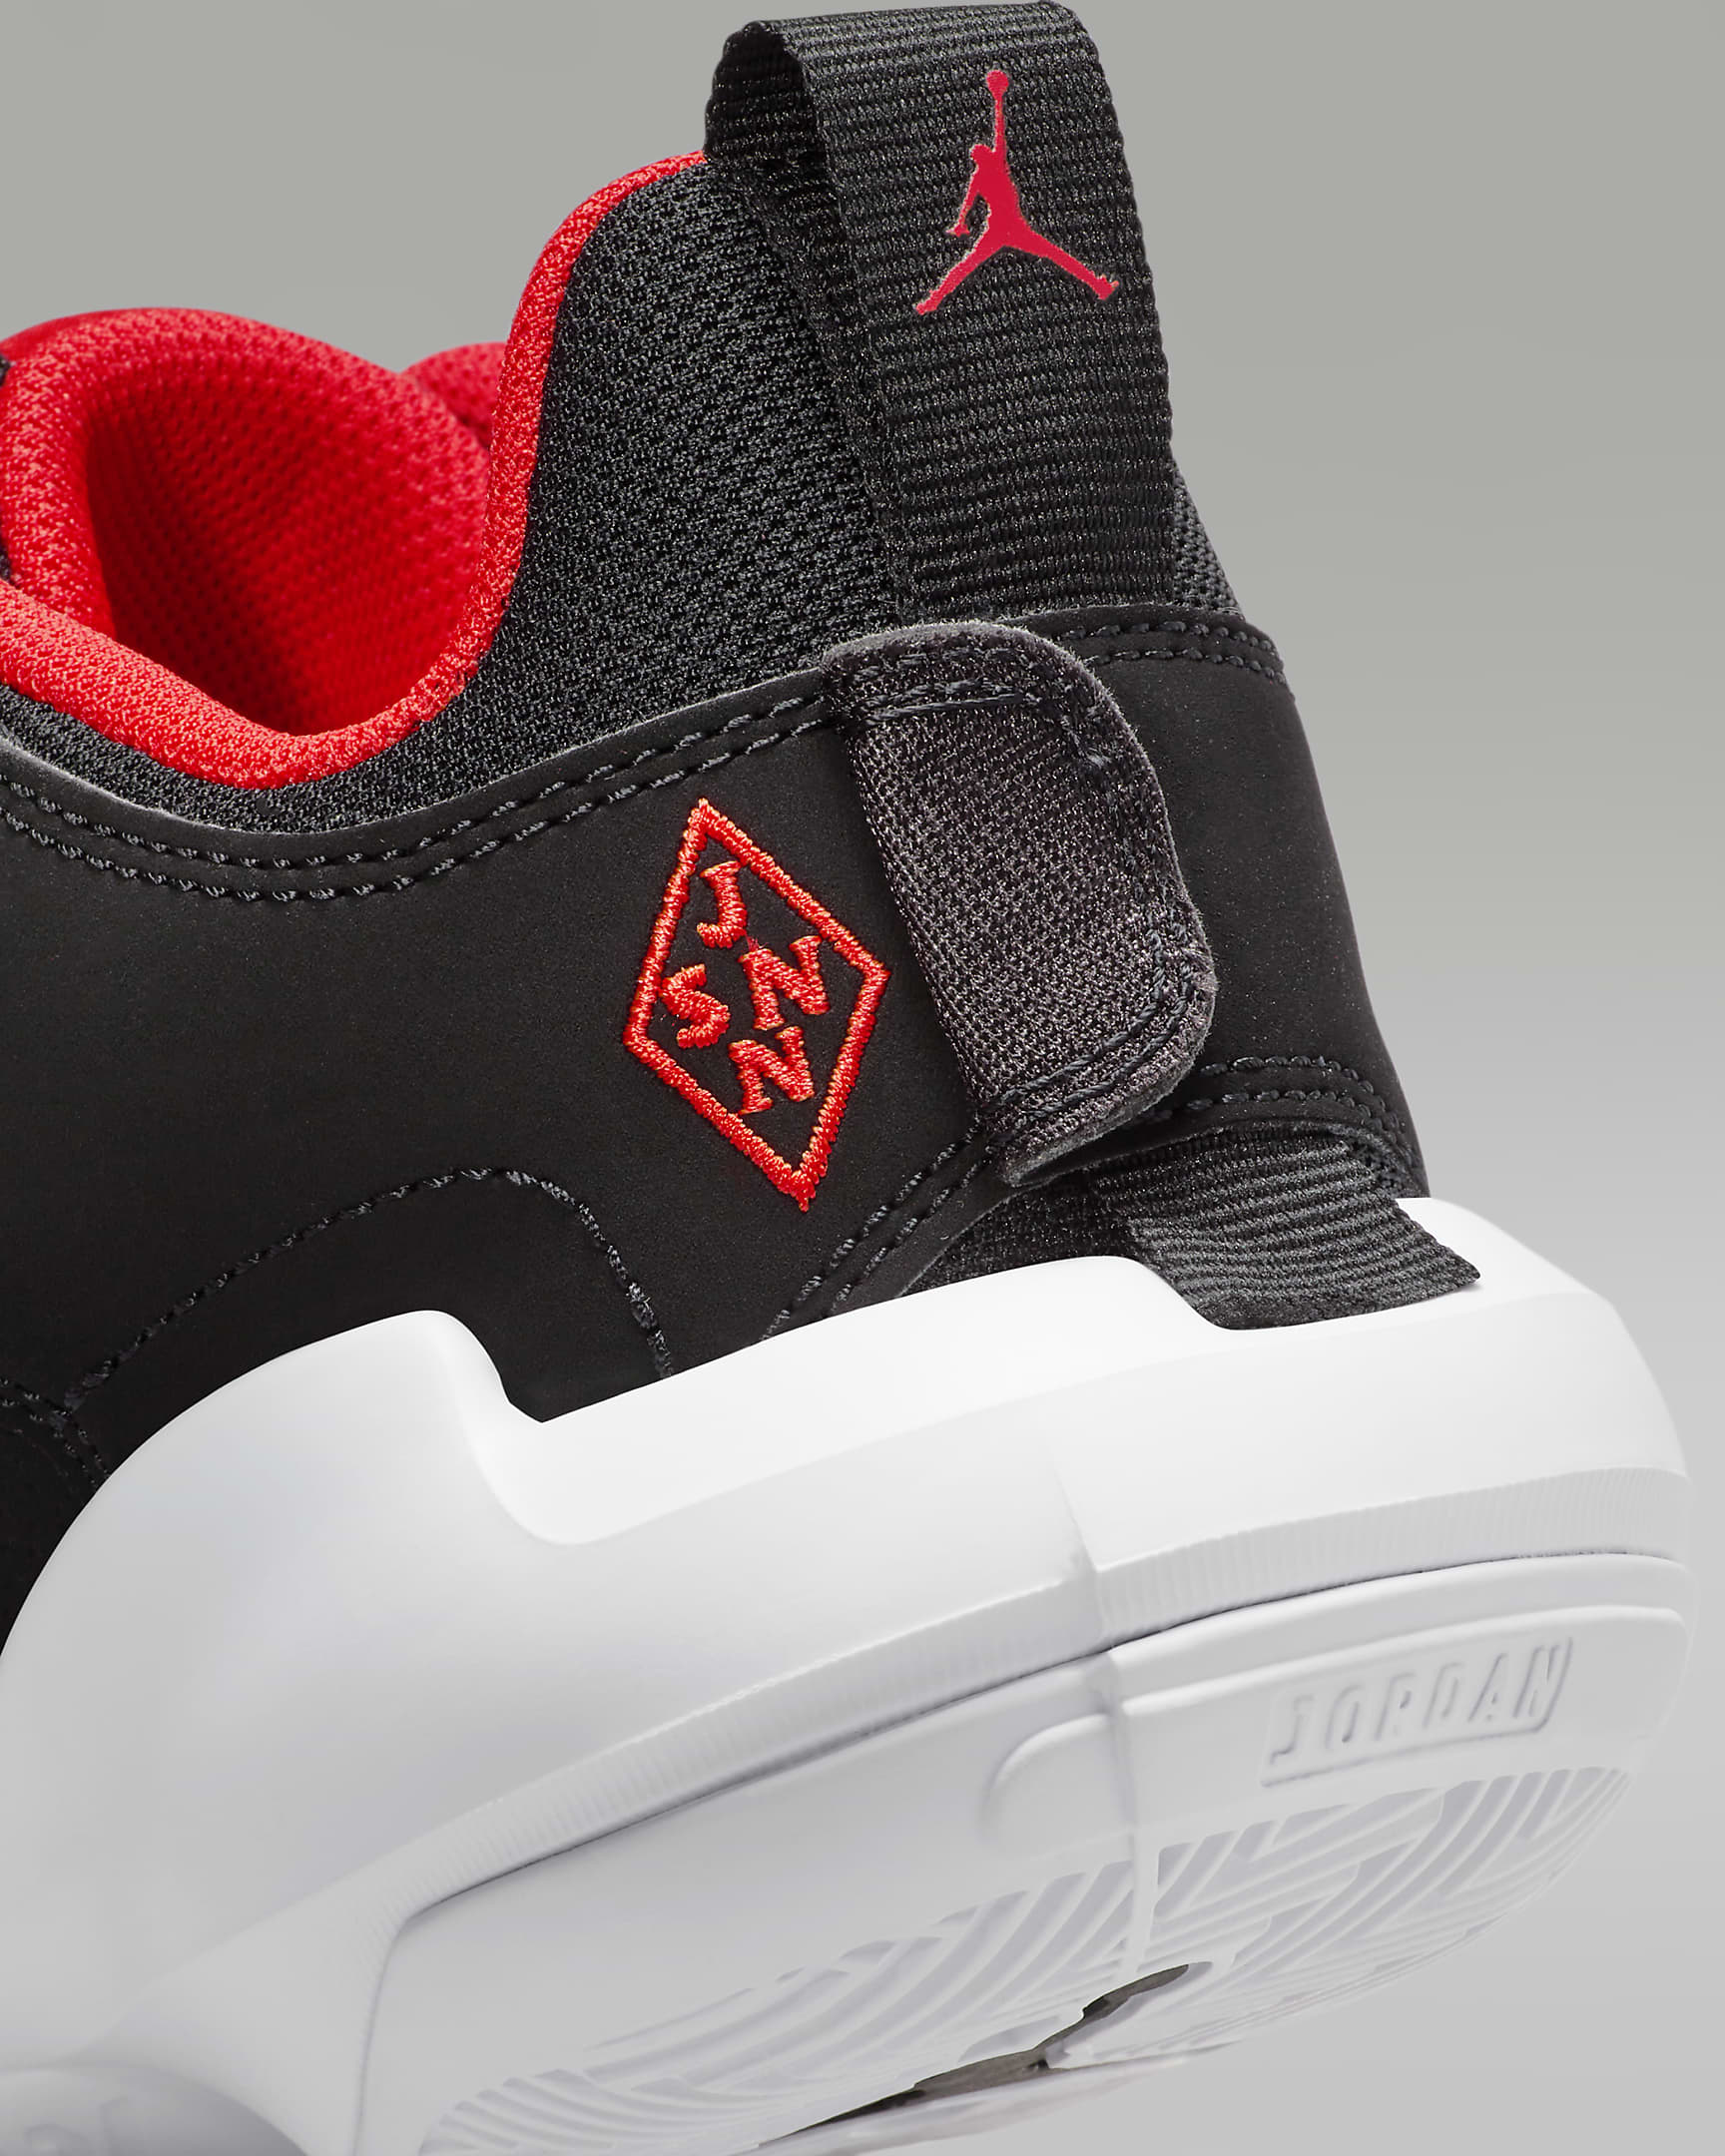 Jordan One Take 5 Older Kids' Shoes - Black/White/Anthracite/Habanero Red